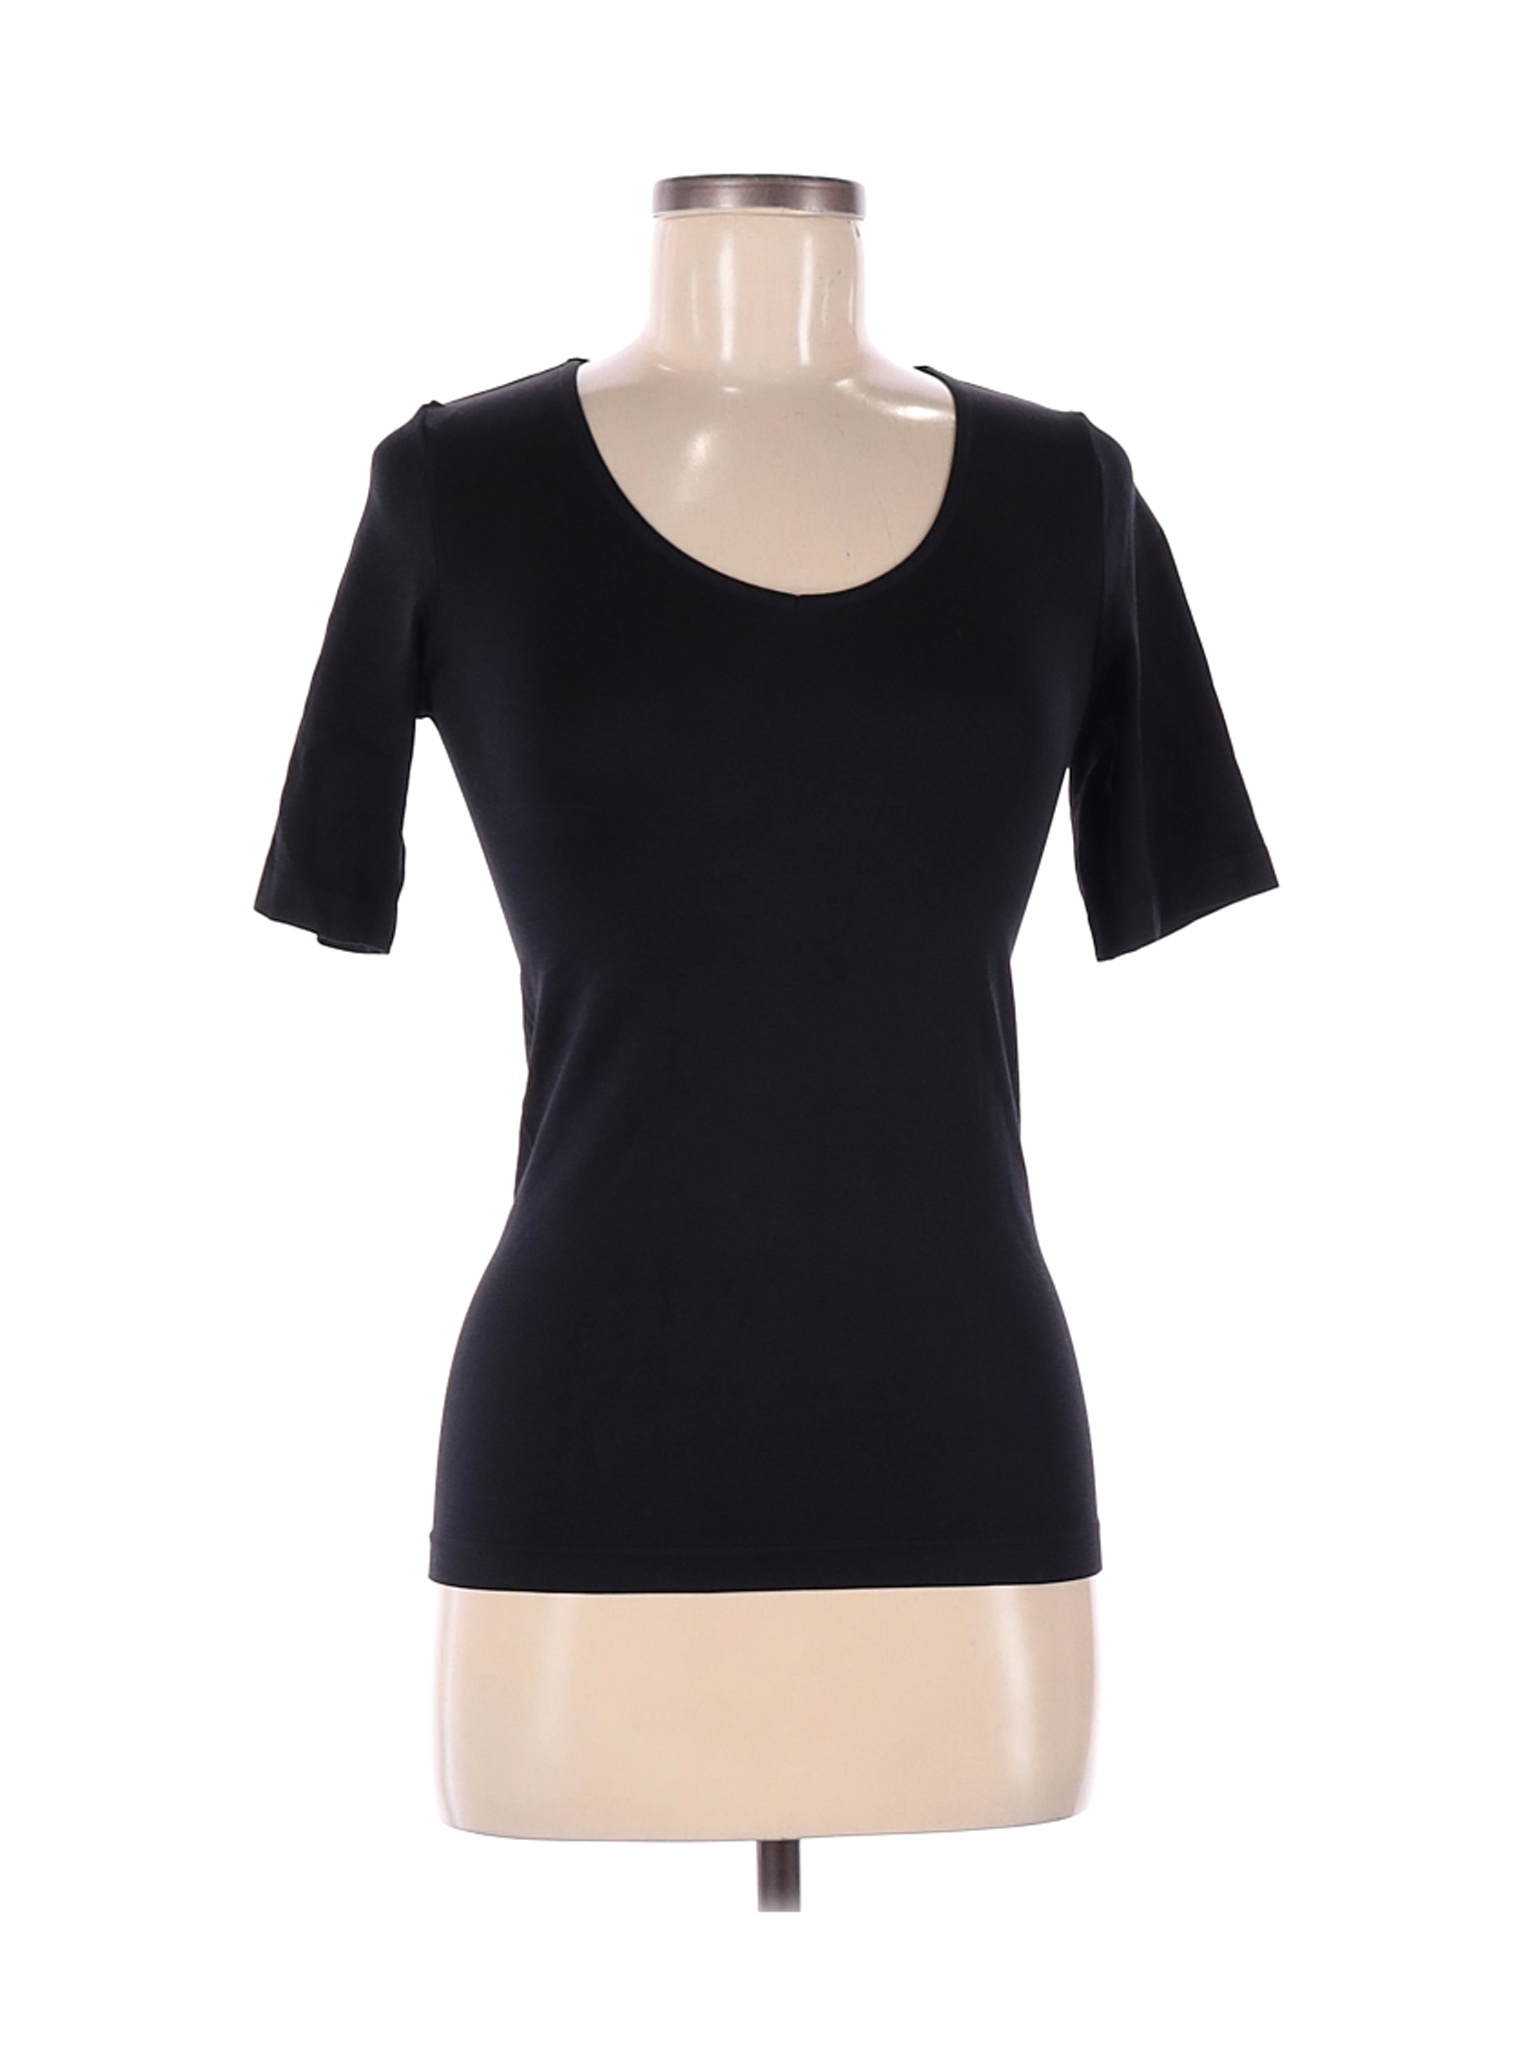 Rhonda Shear Solid Black Short Sleeve T-Shirt Size Med - Lg - 66% off